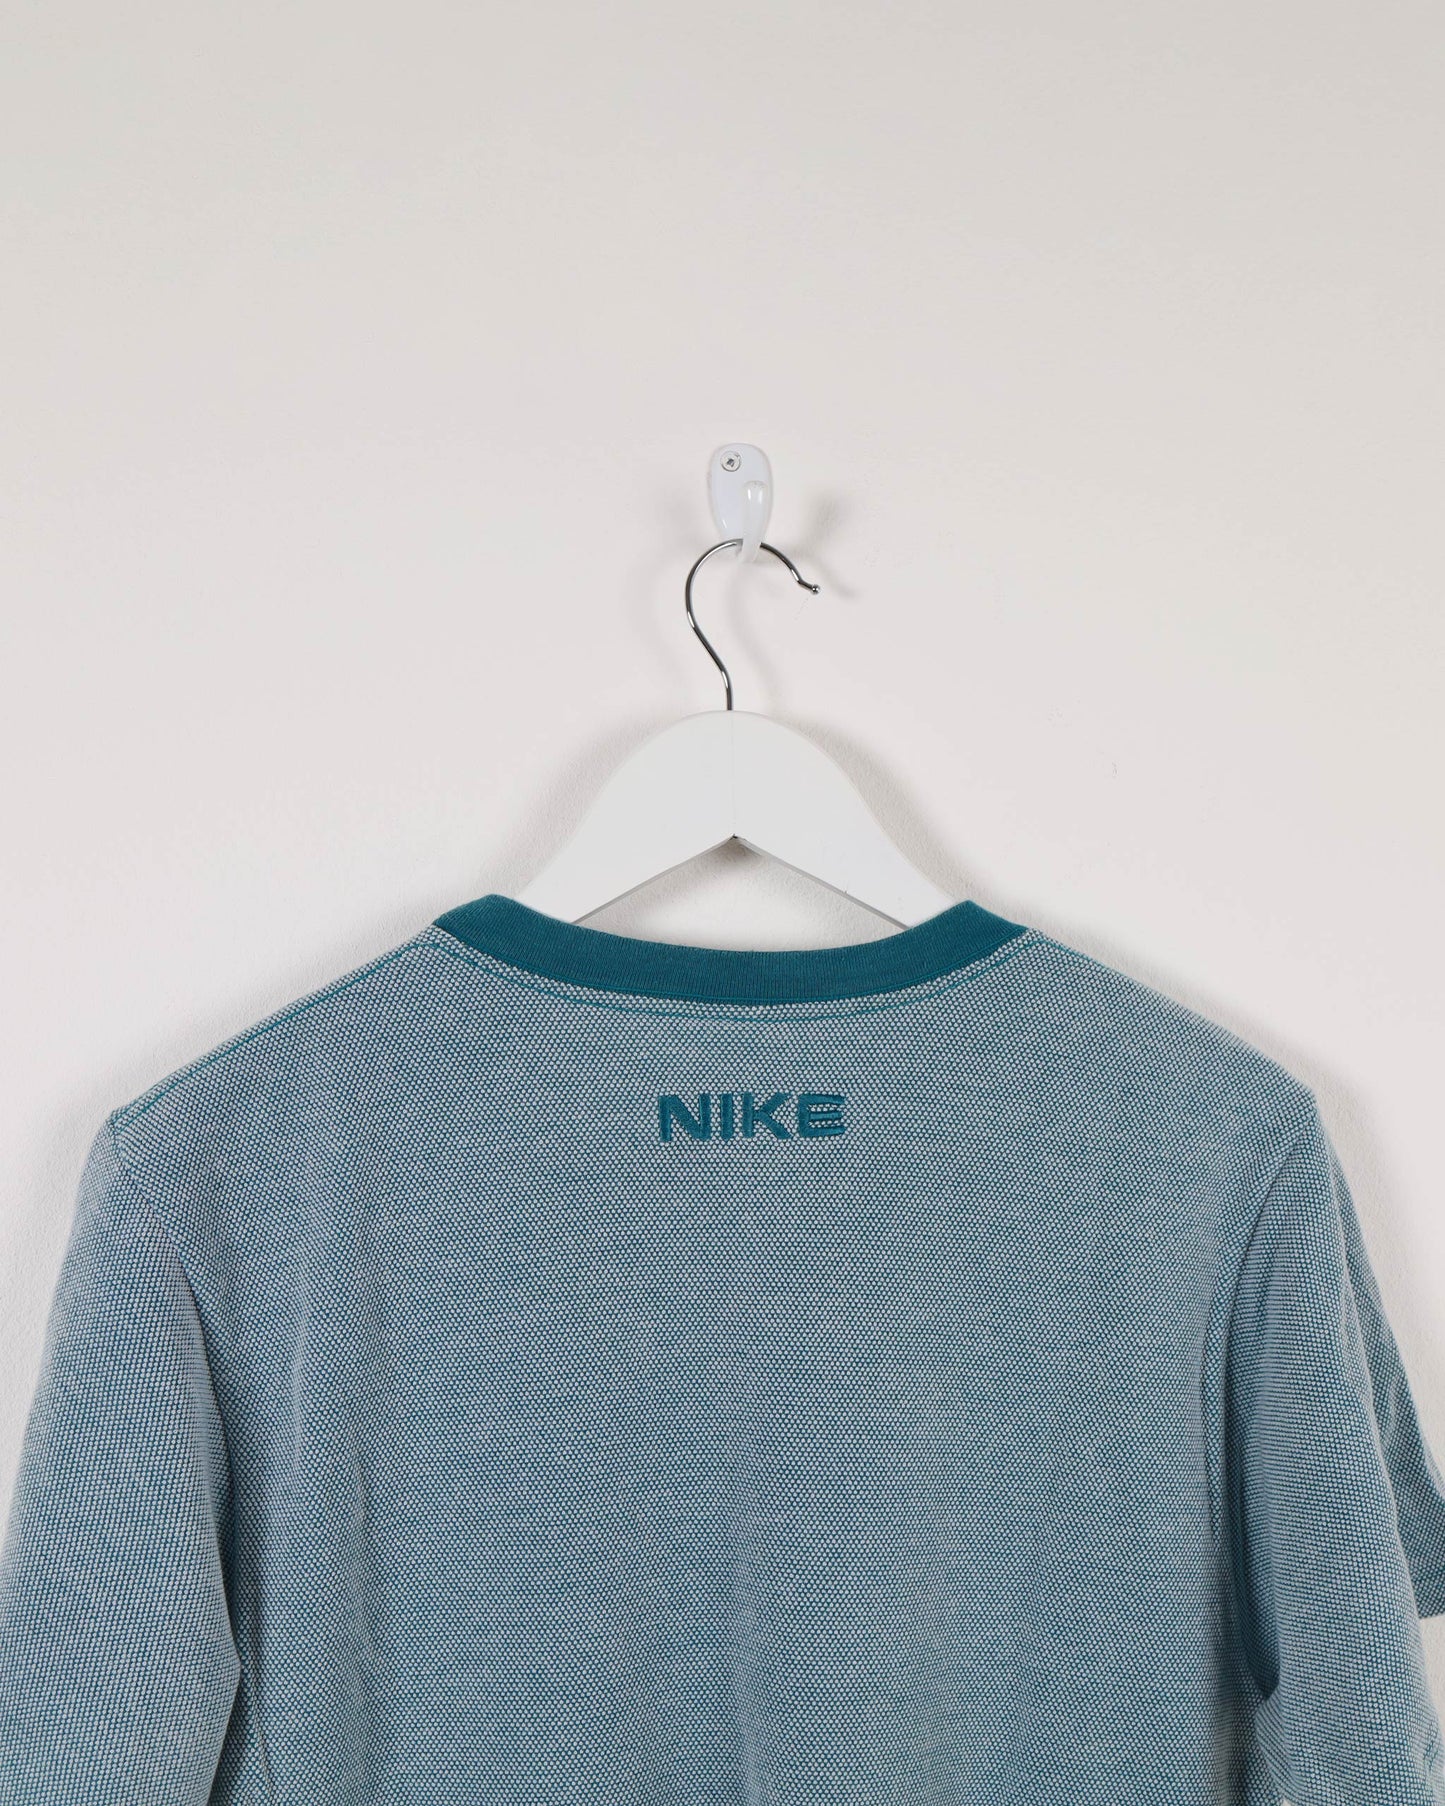 Nike Crewneck Dot T-Shirt Teal Blue S